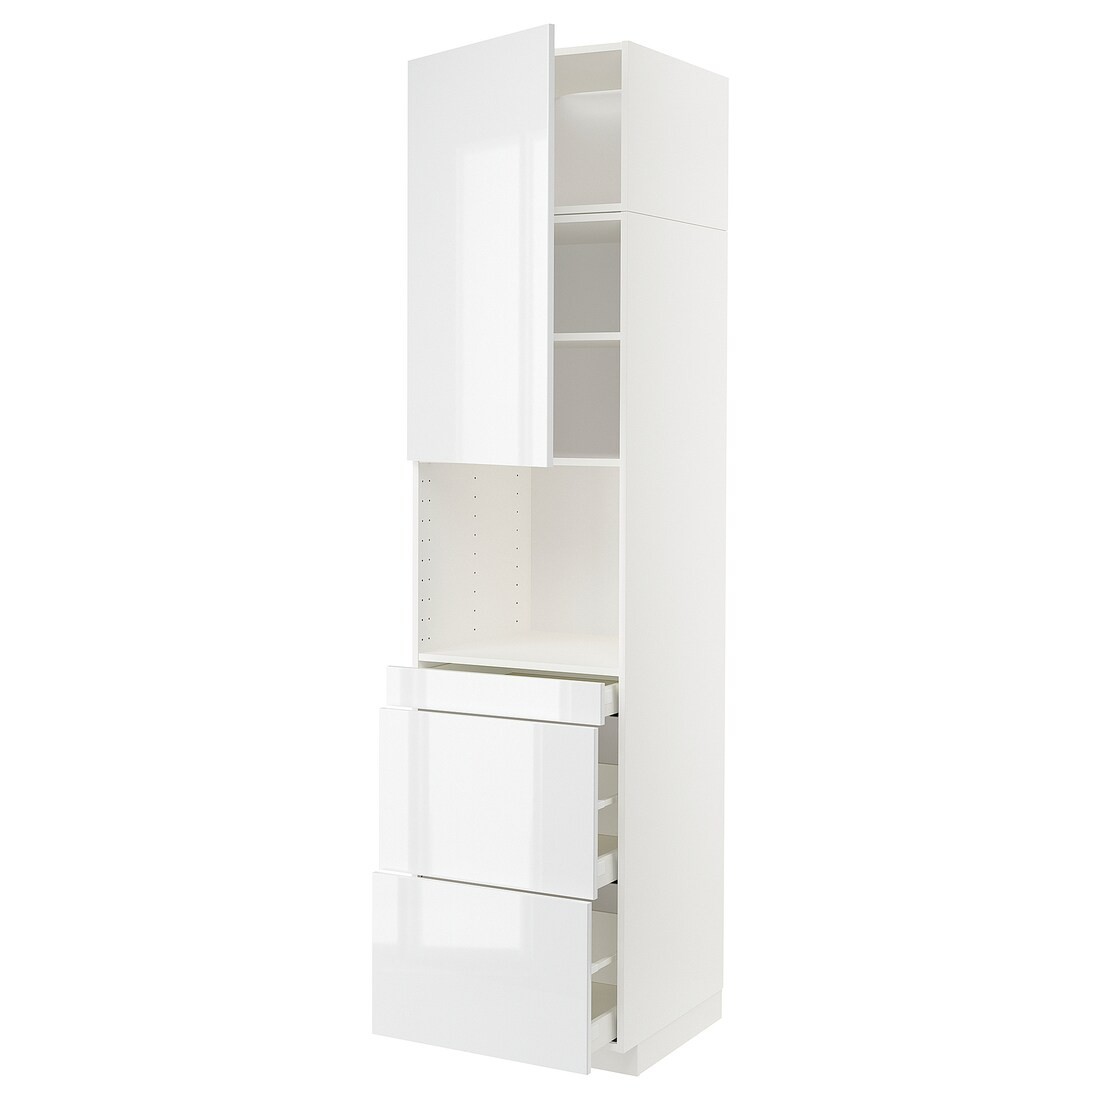 IKEA METOD МЕТОД / MAXIMERA МАКСИМЕРА Высокий шкаф для СВЧ / дверца / 3 ящика, белый / Ringhult белый, 60x60x240 см 89468042 | 894.680.42